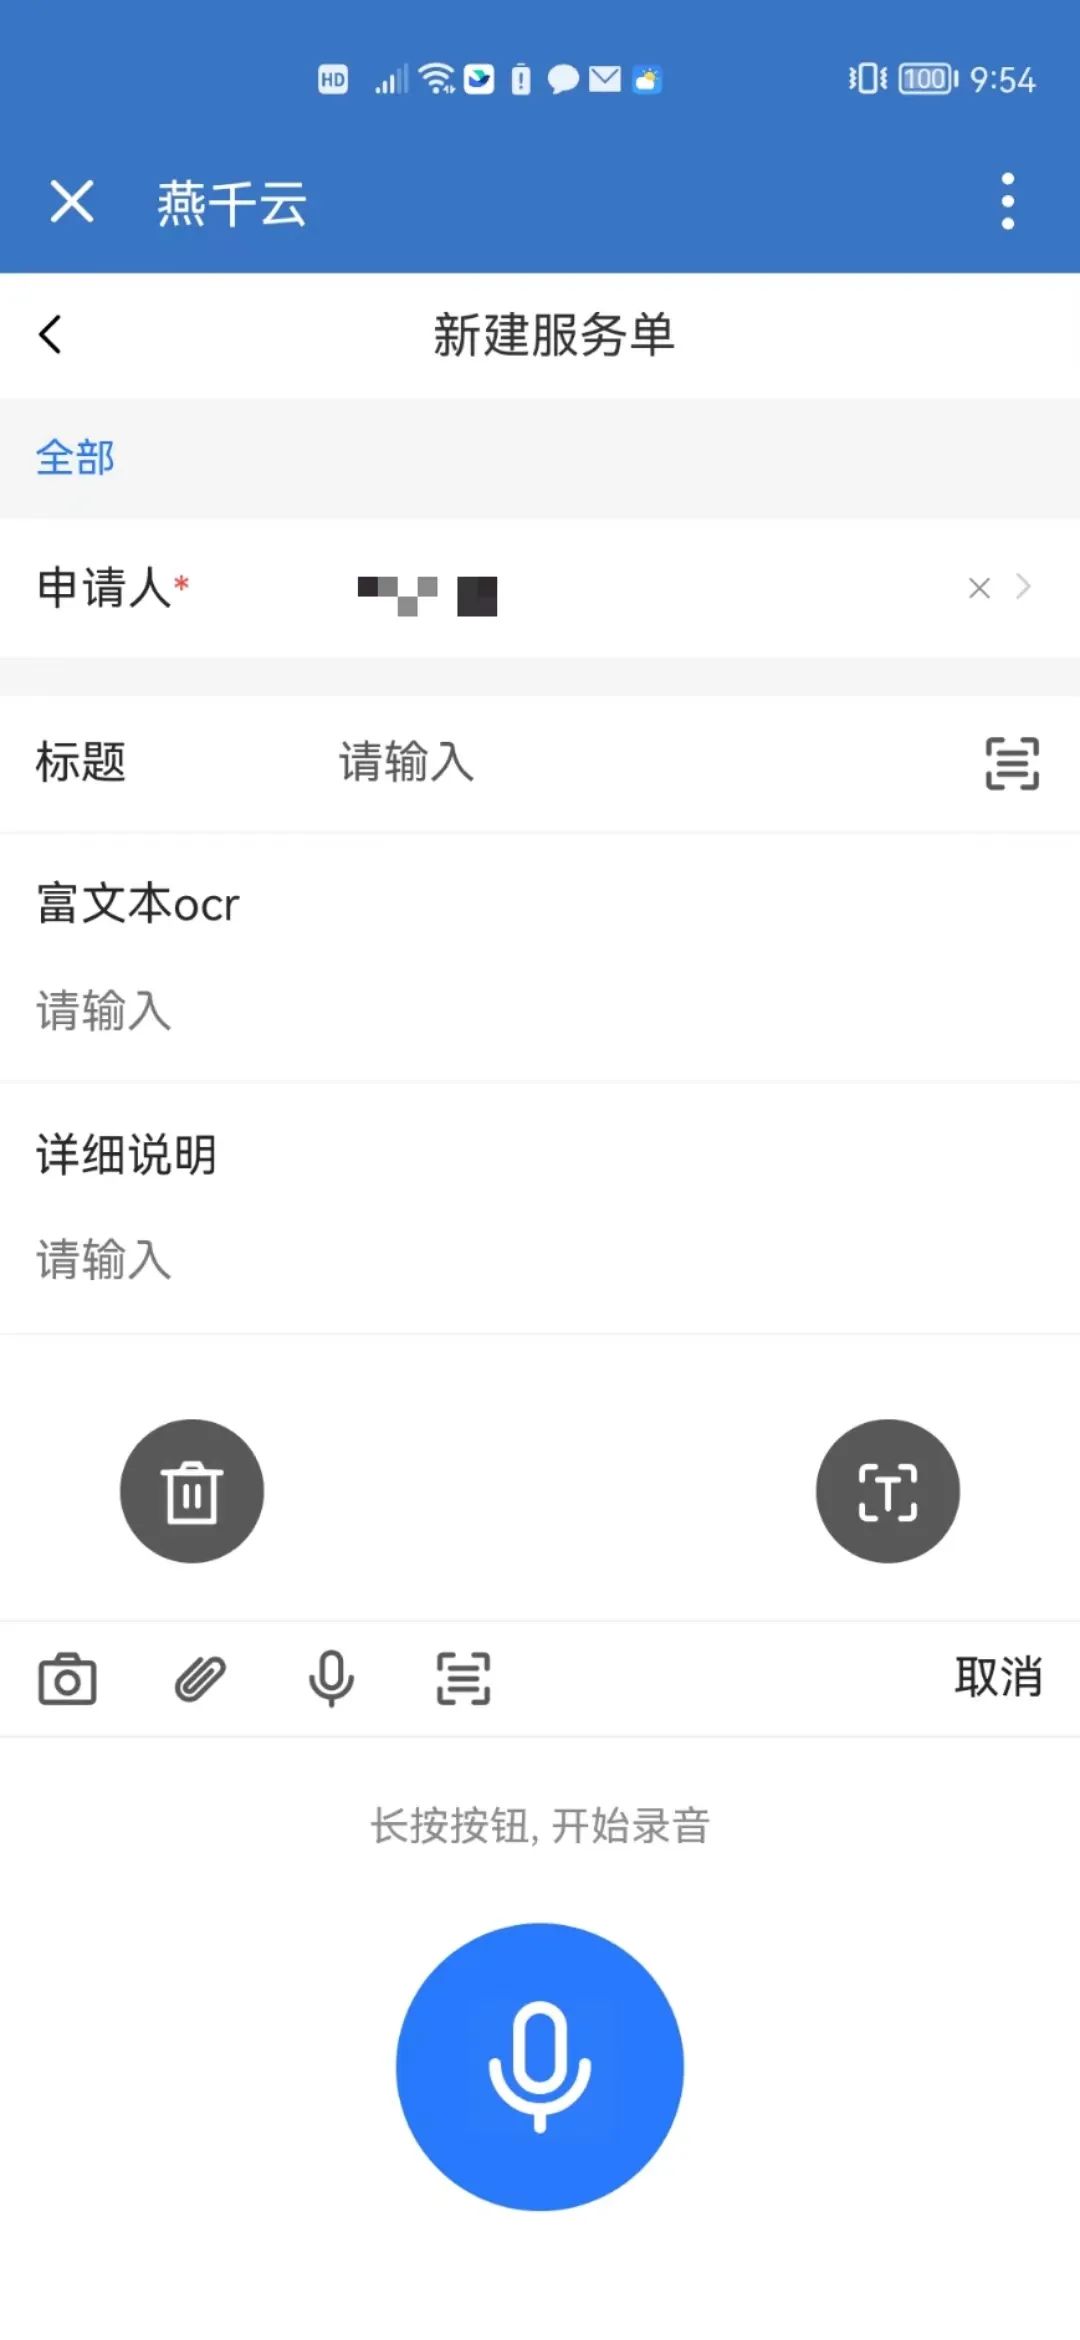 燕千云 YQCloud 数智化业务服务平台 发布1.12版本